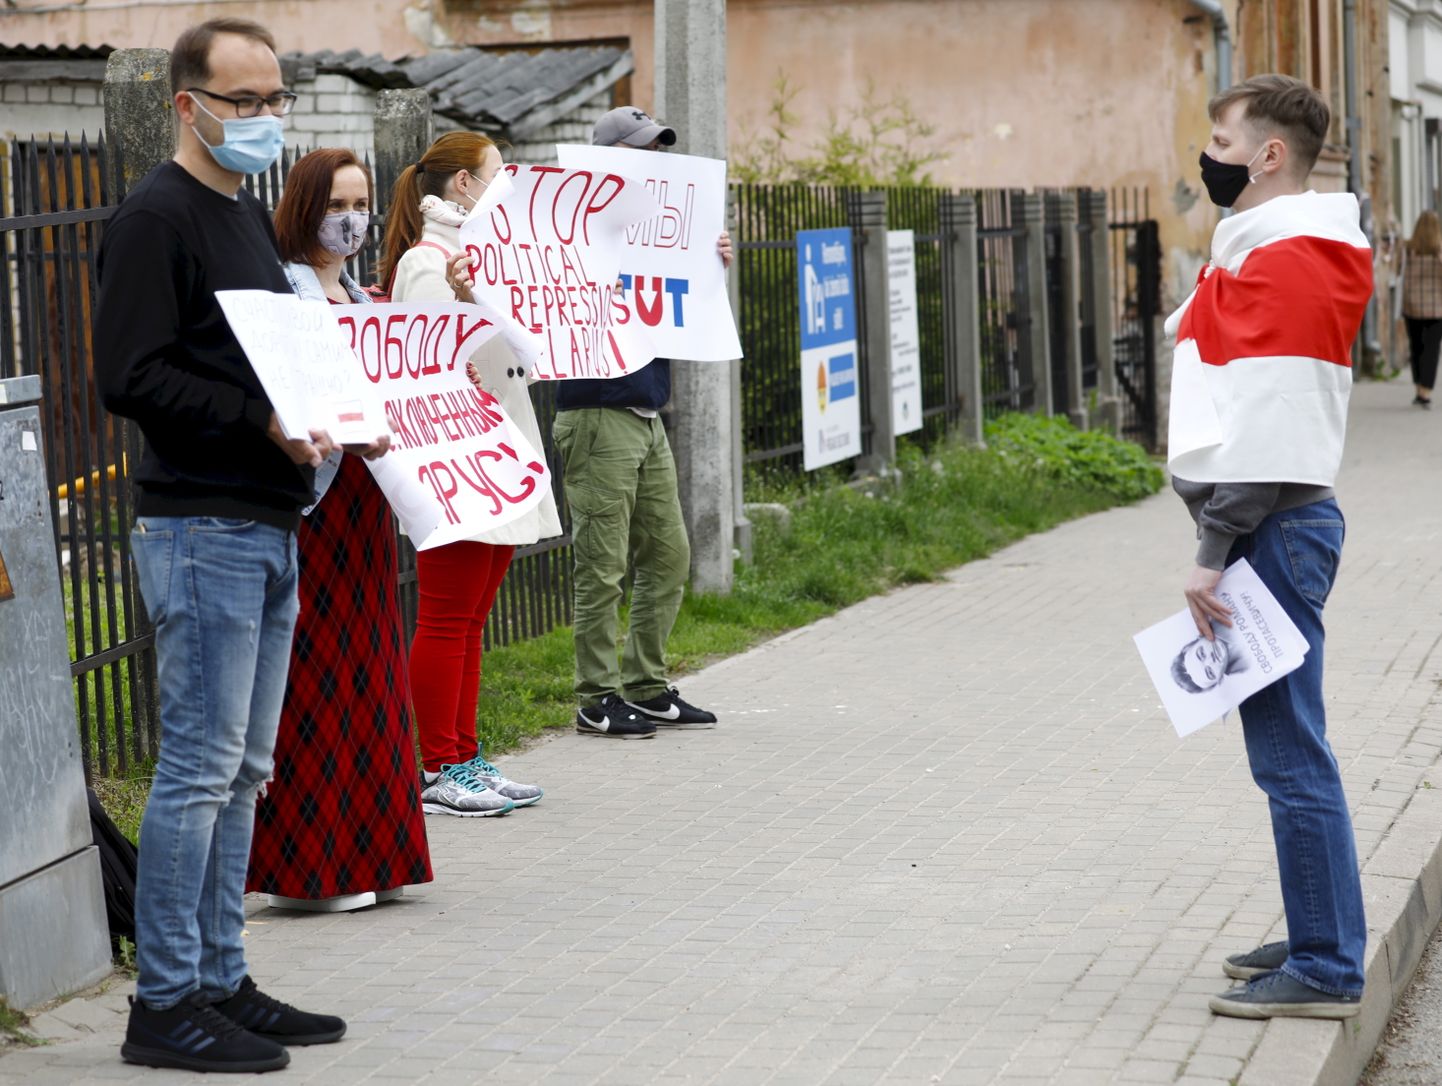 Turot rokās plakātus ar uzrakstiem – "Laimīgu ceļu! Vai pašiem nav bail?", "Pārstājiet politiskās represijas pret baltkrievu tautu"-, otrdienas, 25. maija, rītā pie vēstniecības Rīgā bija sanācis pavisam neliels pulciņš Latvijā dzīvojošo baltkrievu.